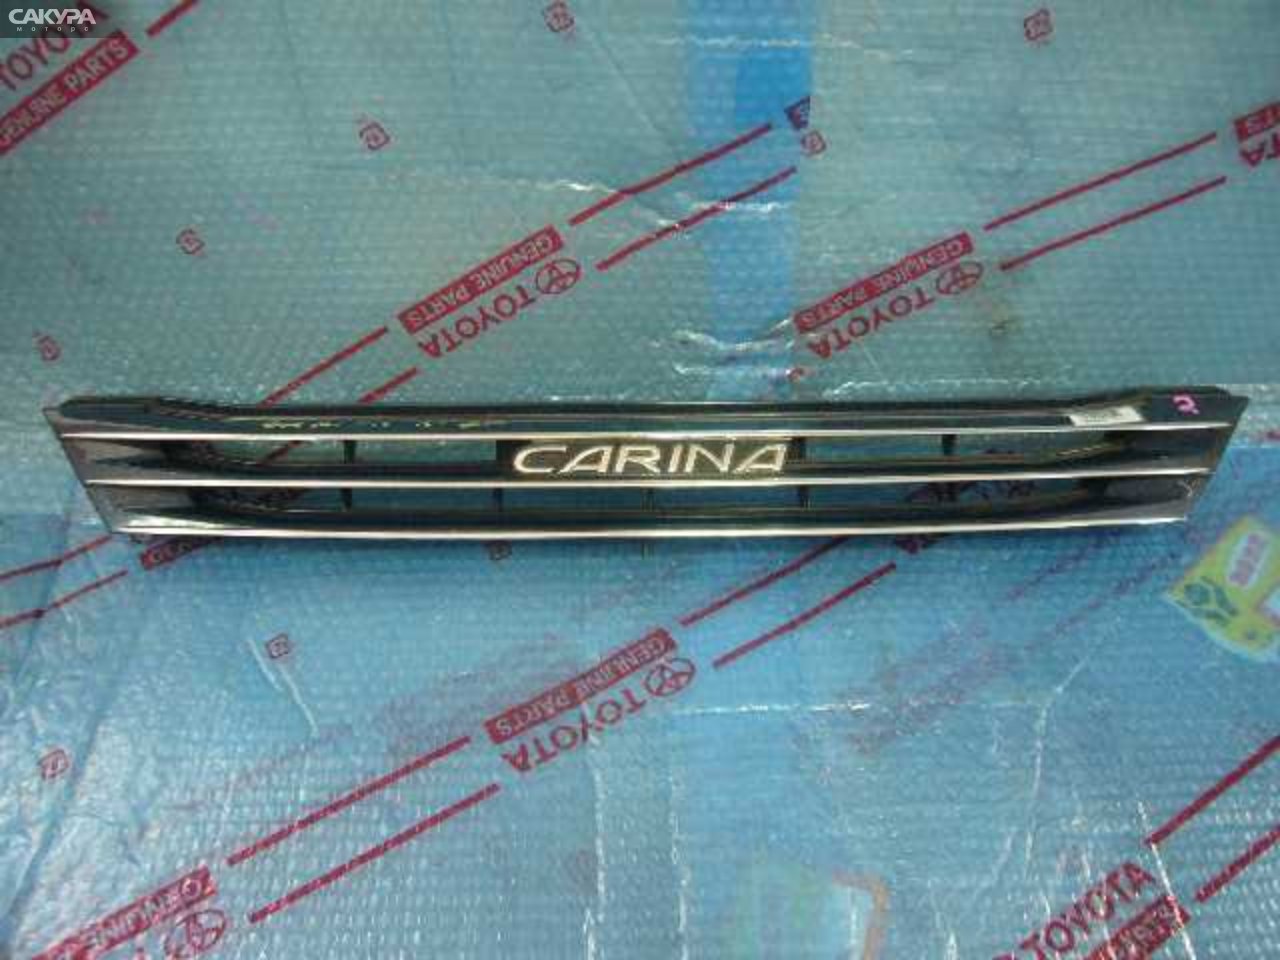 Решетка радиатора Toyota Carina AT210: купить в Сакура Кемерово.